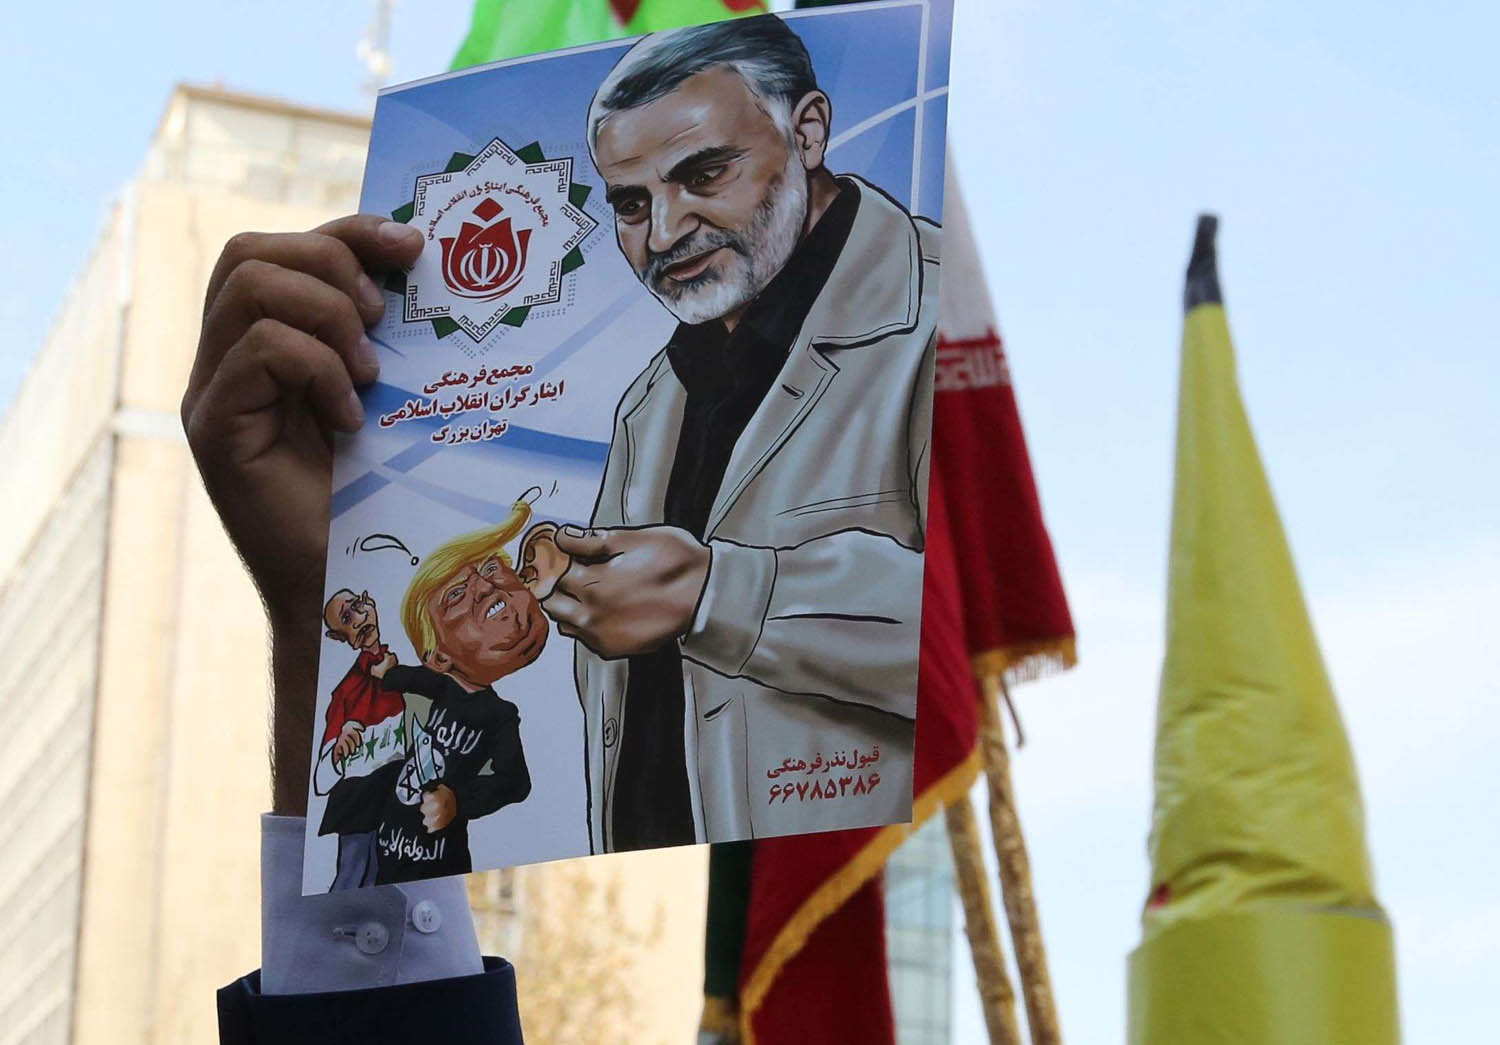 متظاهر يرفع صورة لقاسم سليماني قائد فيلق القدس الإيراني المسؤول عن الميليشيات الشيعية في المنطقة